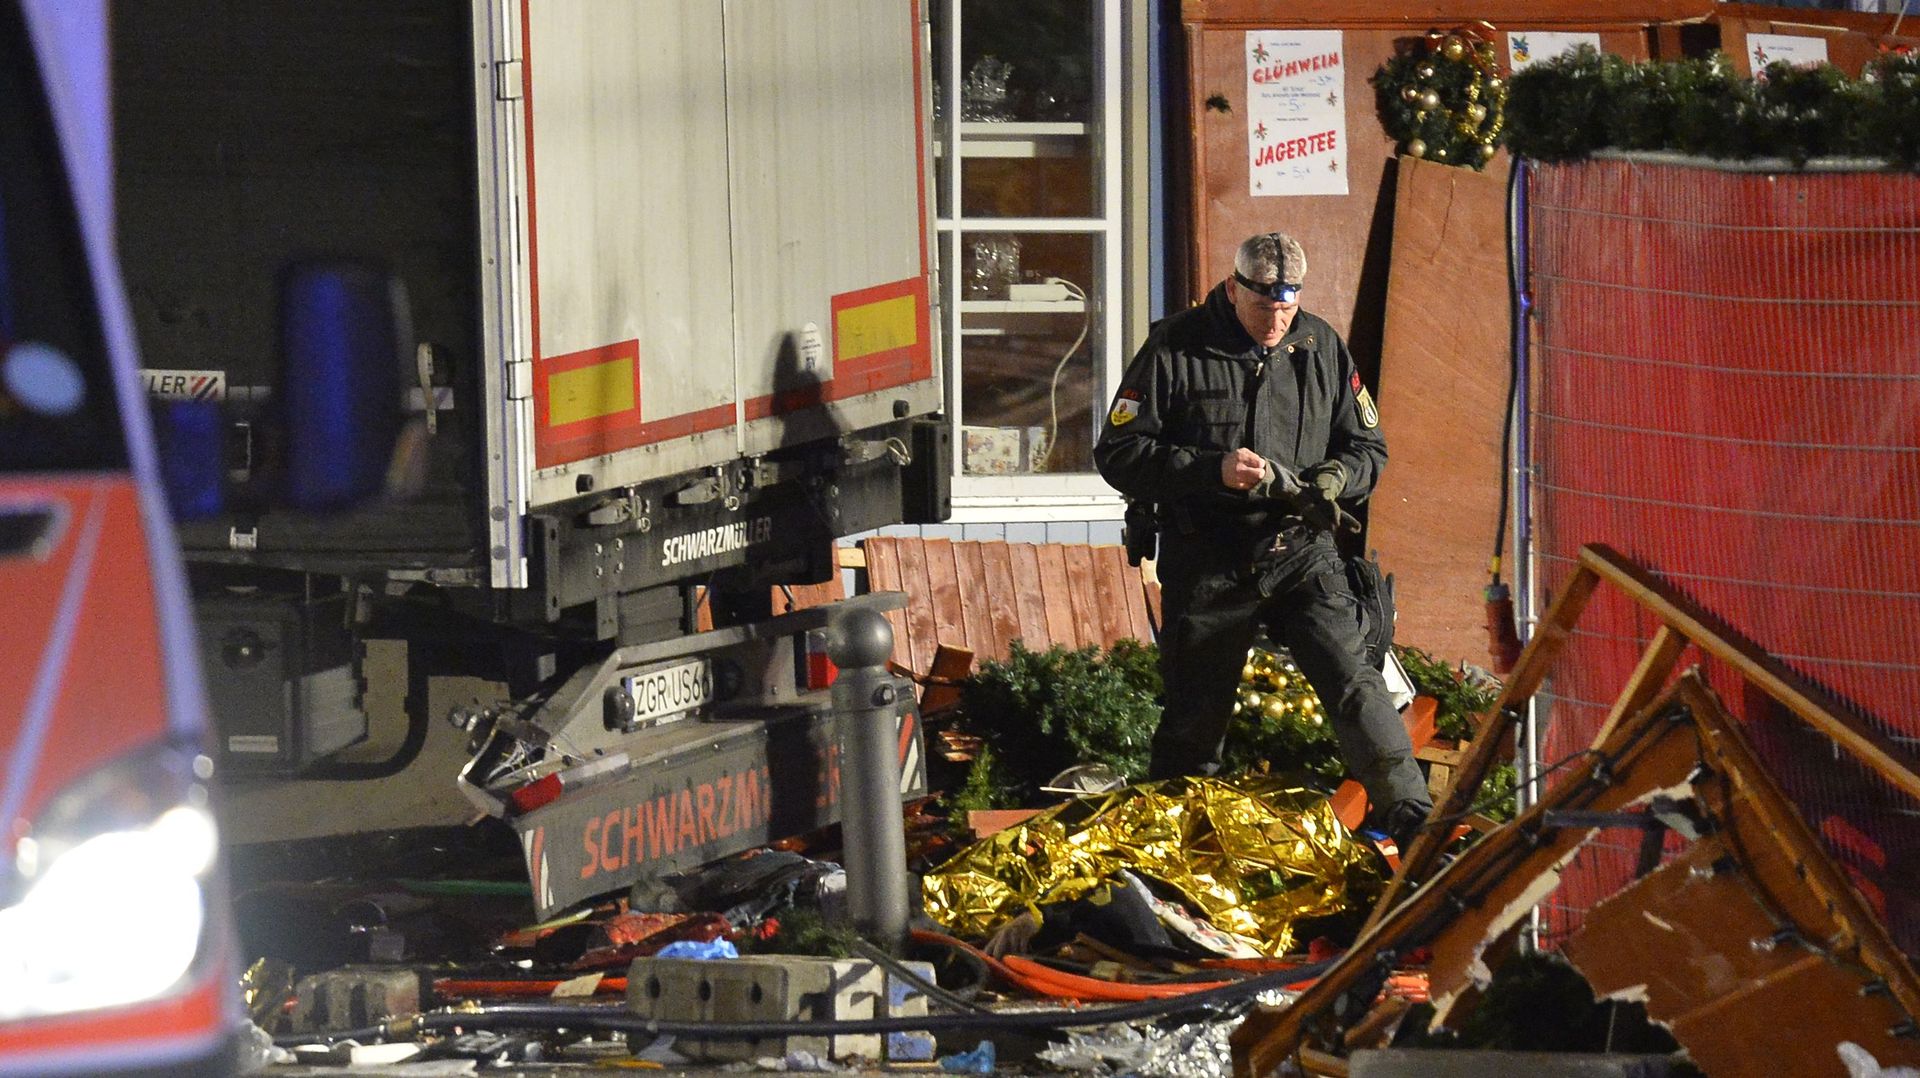 Un camion fonce dans un marché de Noël à Berlin: au moins neuf morts, un suspect arrêté (vidéos)